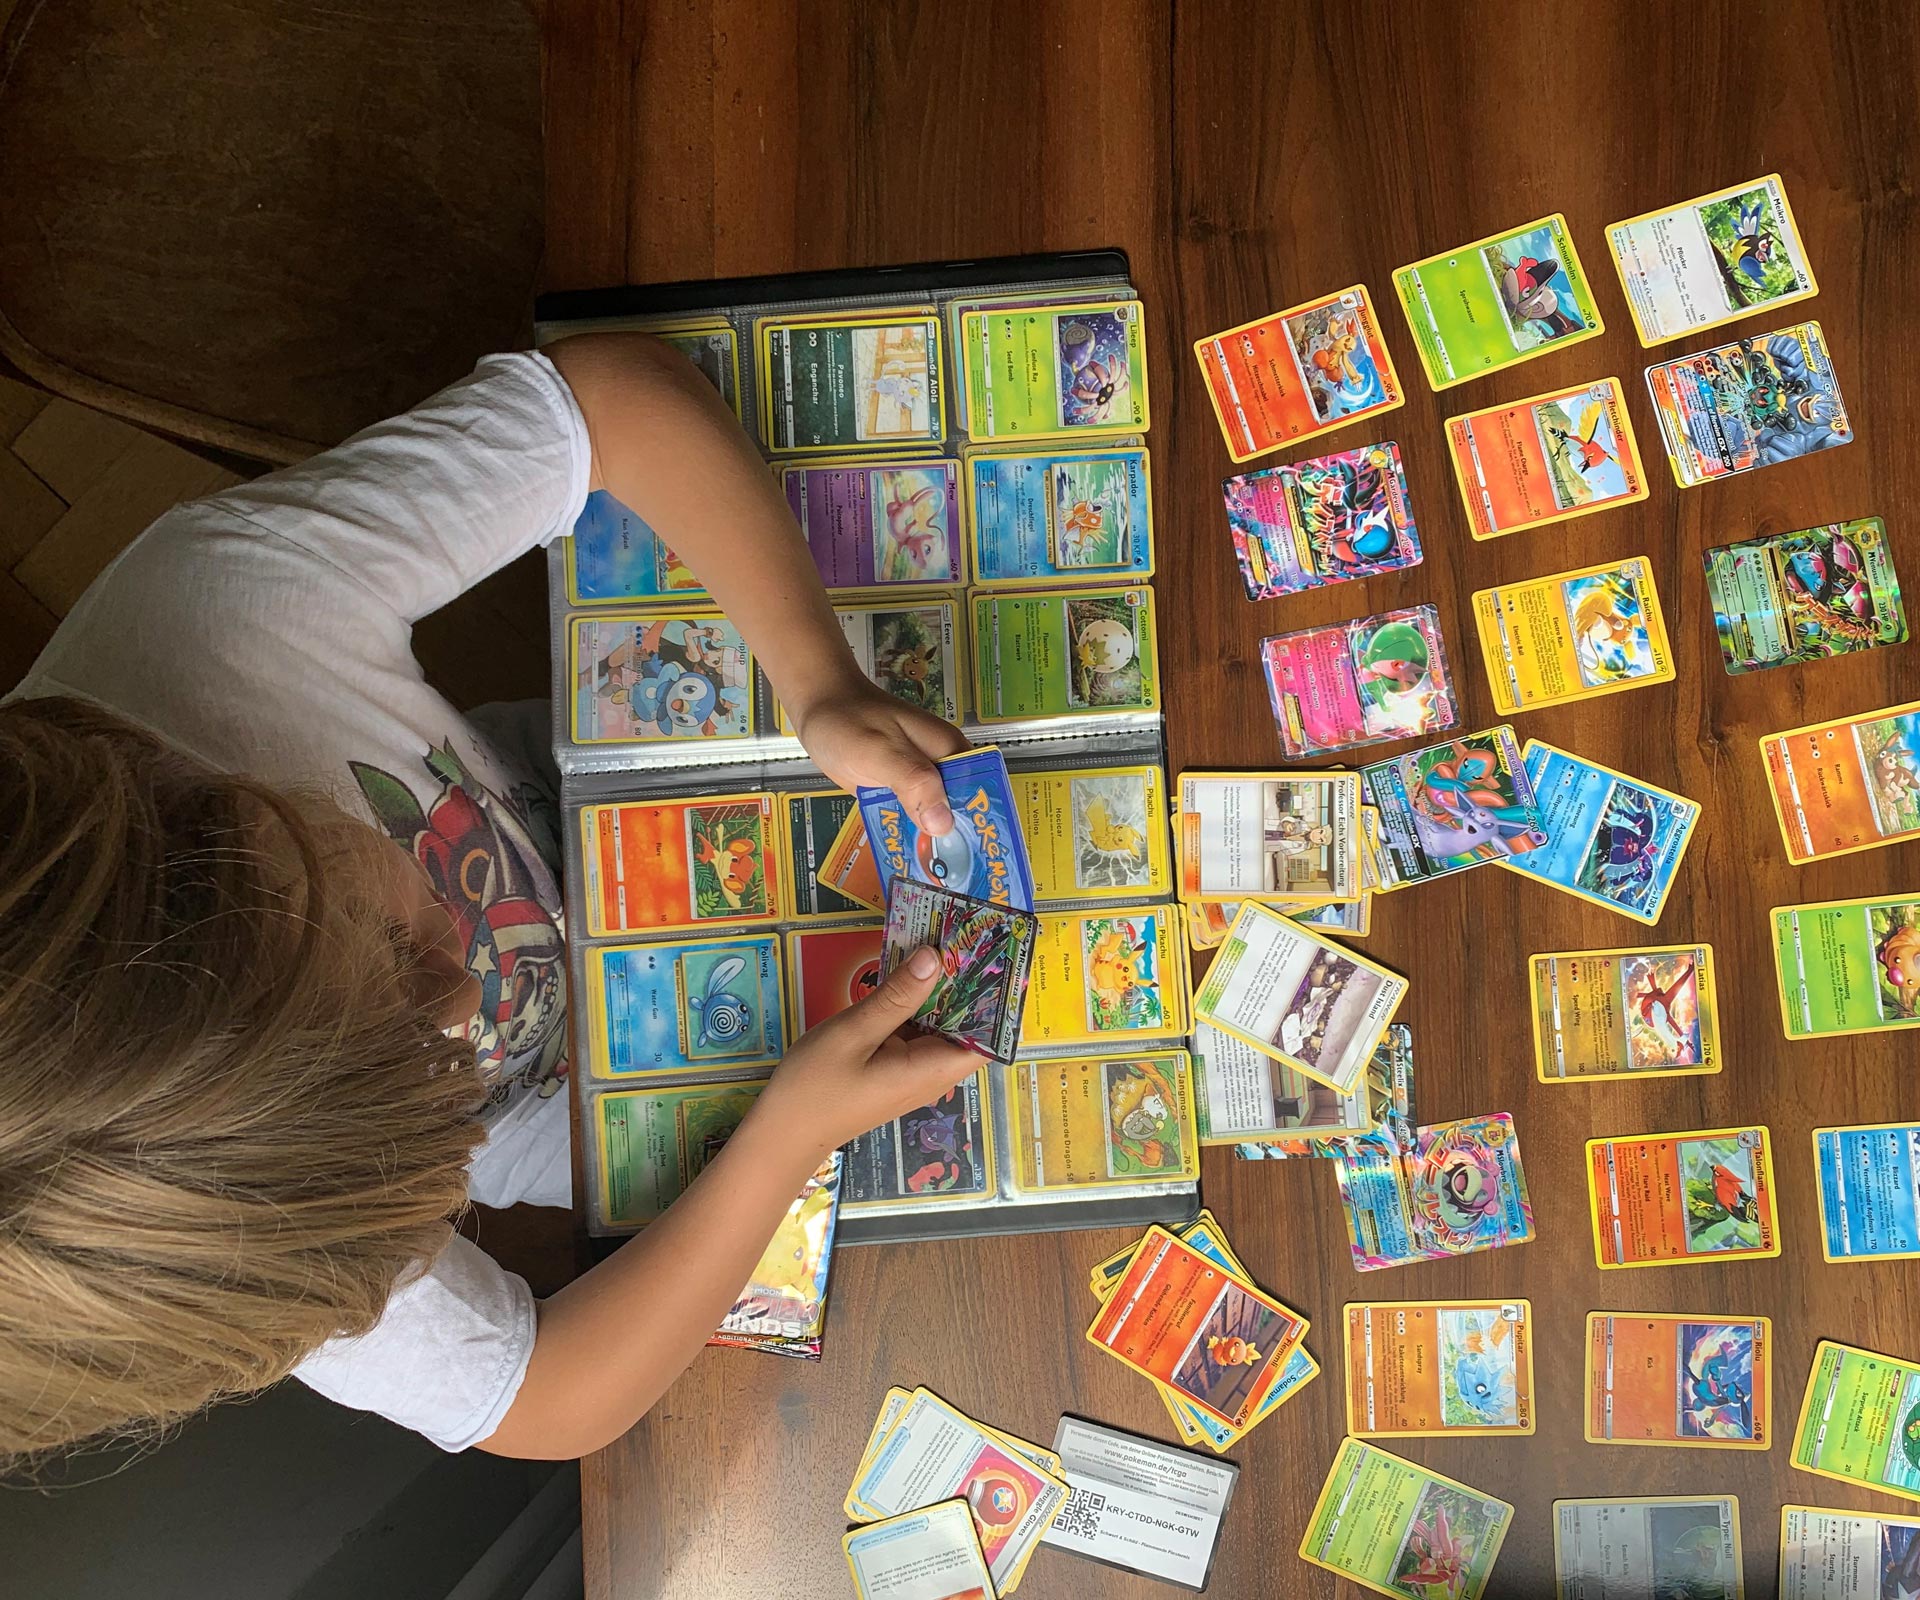 Albums de cartes à collectionner, Livre de cartes Pokemon, Album de cartes  Pokémon, Classeur Pokémon